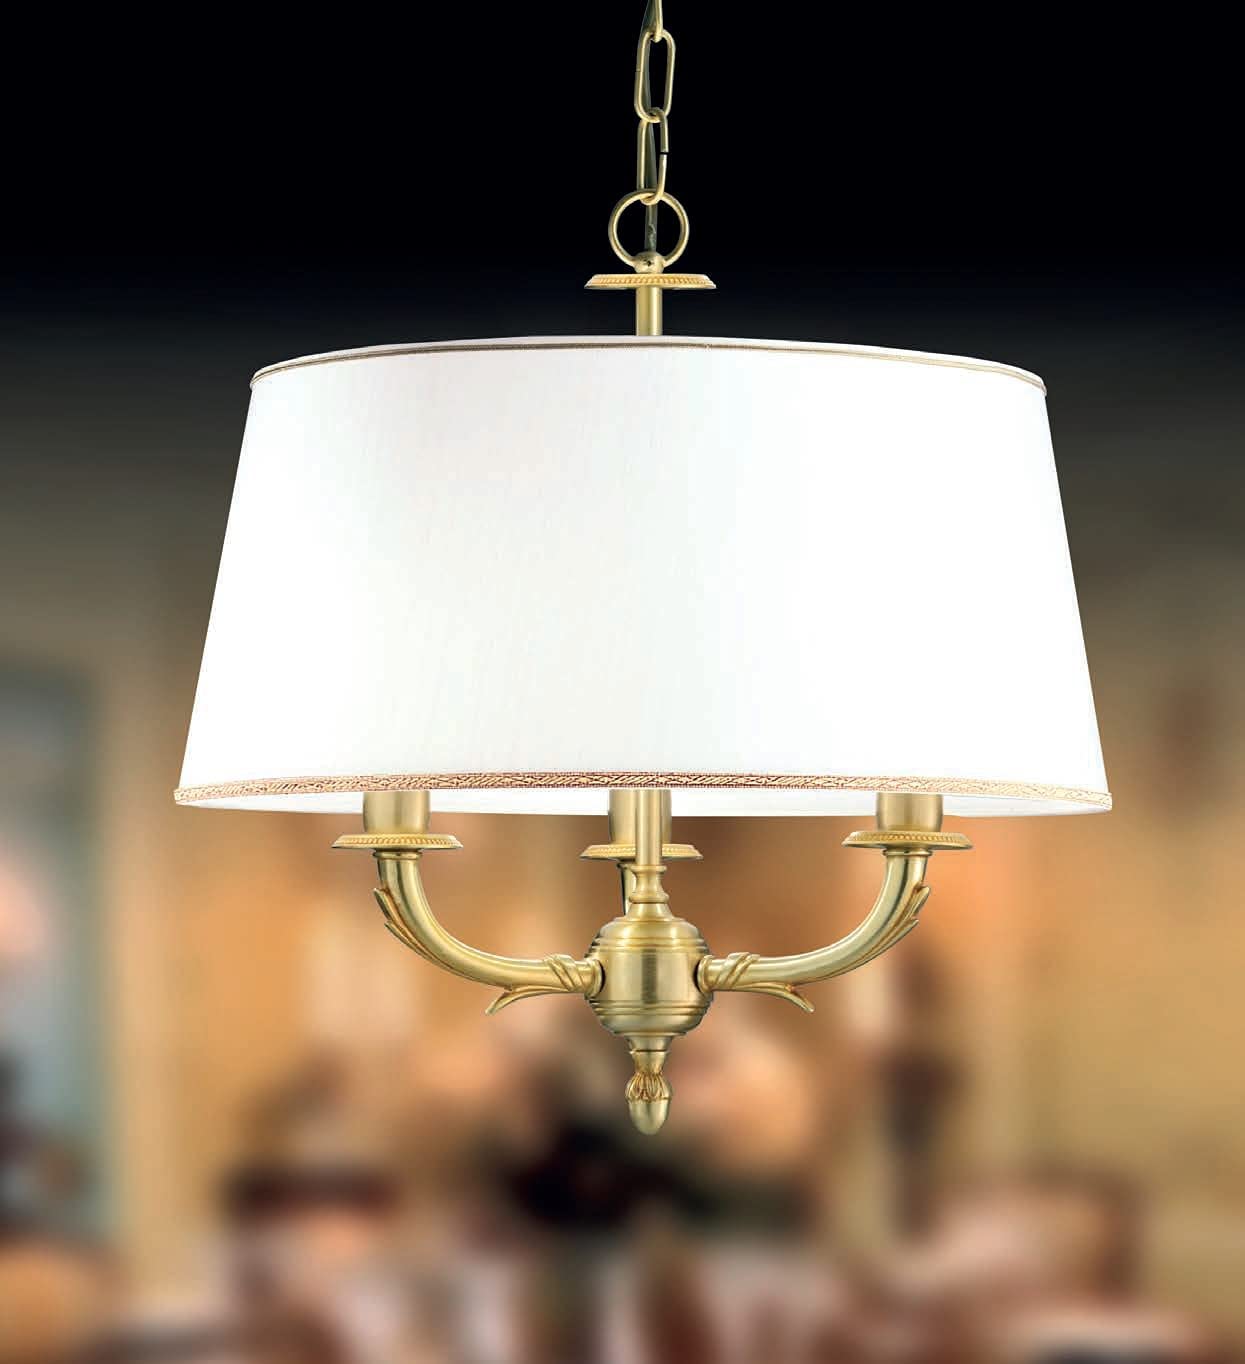 Lampadario a sospensione classico a 3 luci in ottone oro antico con paralume di stoffa avorio chiaro PR 6760/S3